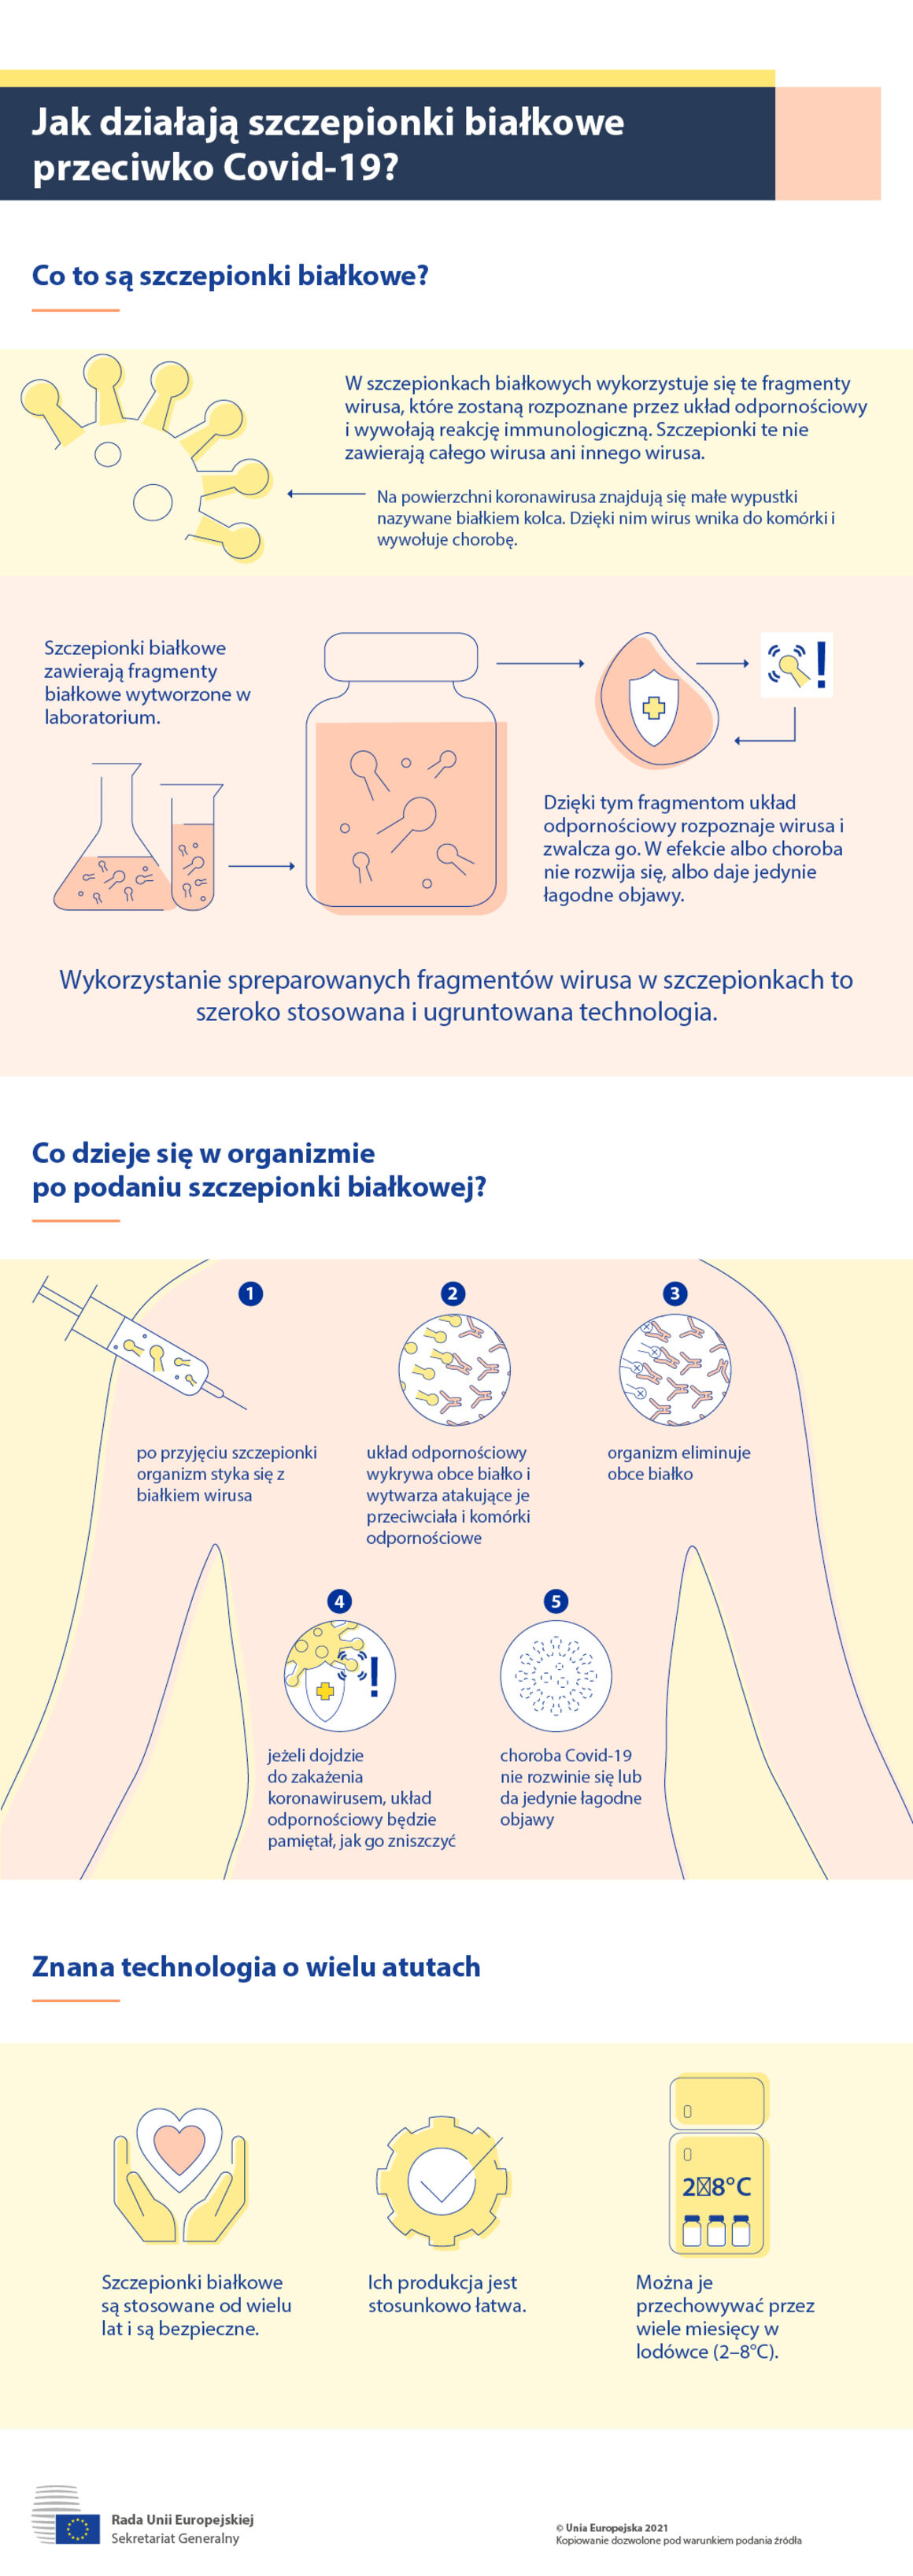 Jak działają szczepionki białkowe przeciwko Covid-19? – infografika